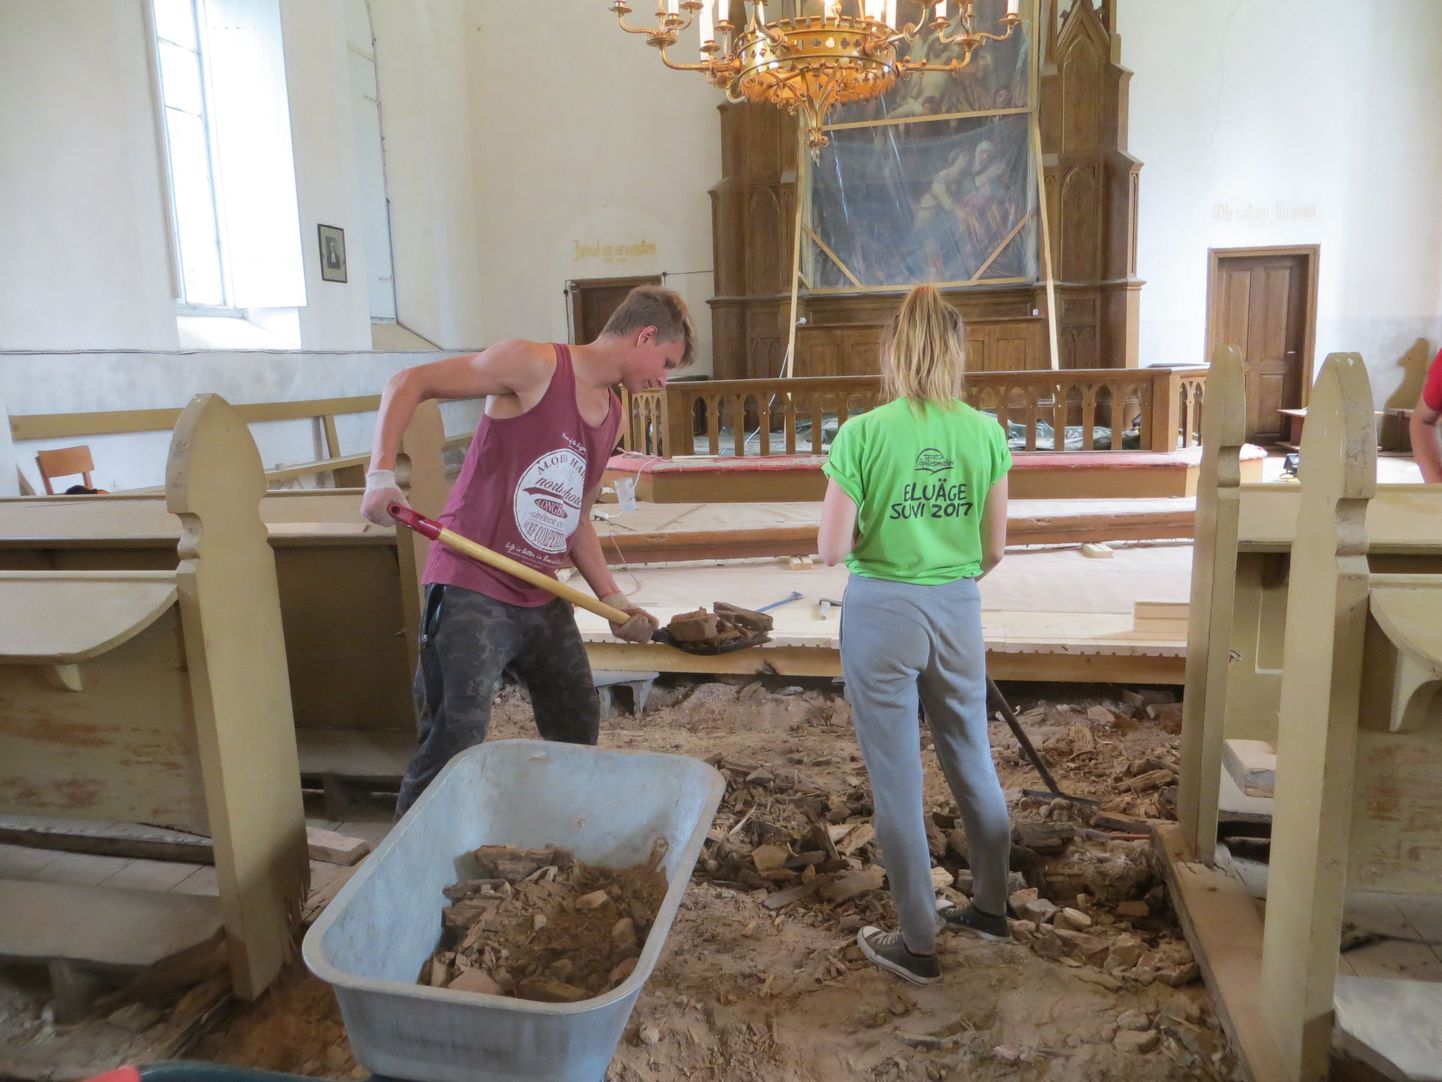 Juulis müttasid kirikus malevlased, kes võtsid üles pehkinud põrandat ja vedasid kärudega pinnast välja.